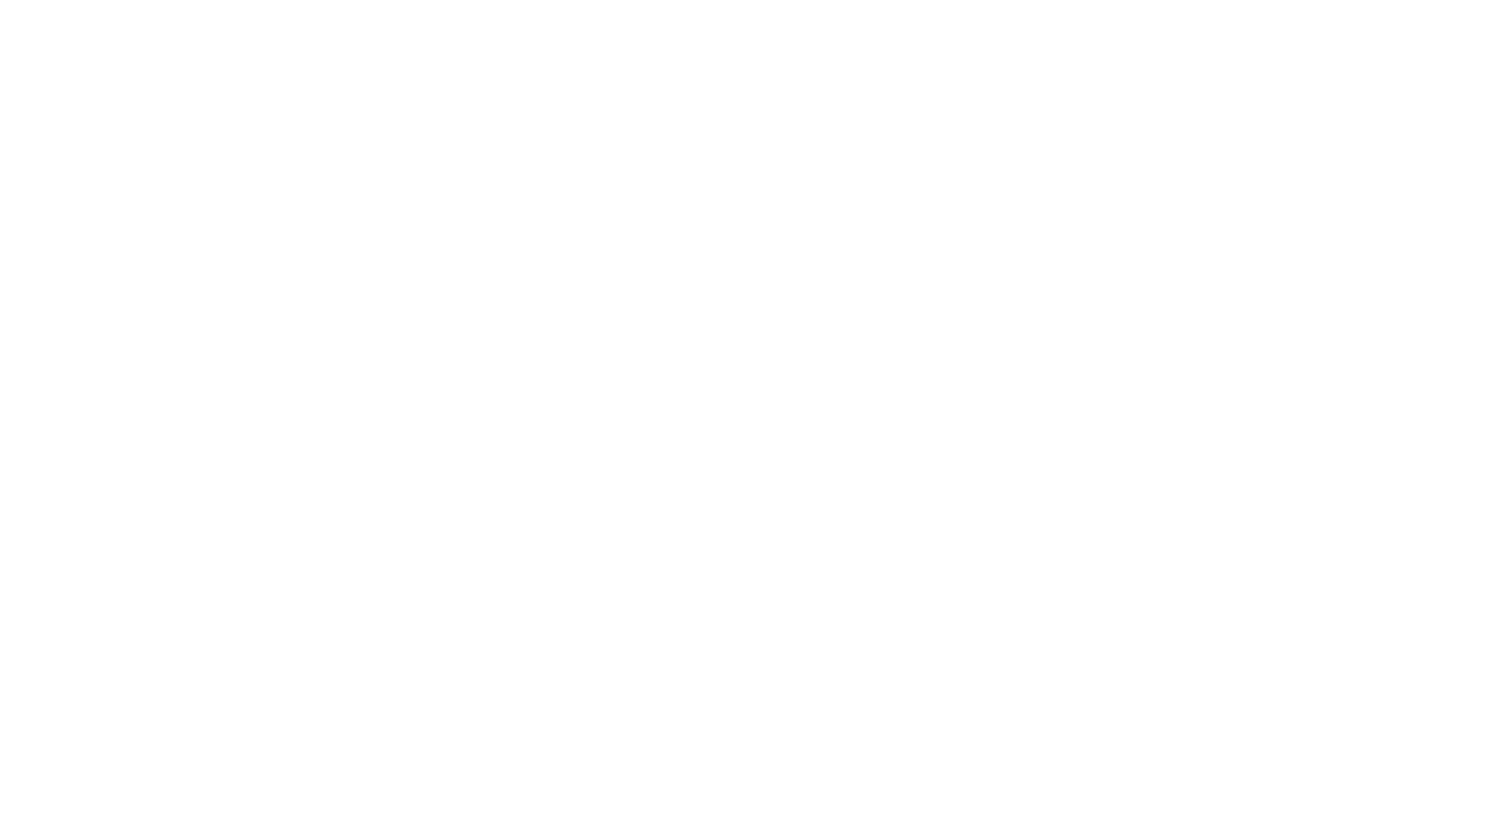 Krueger Family Law, P.C.